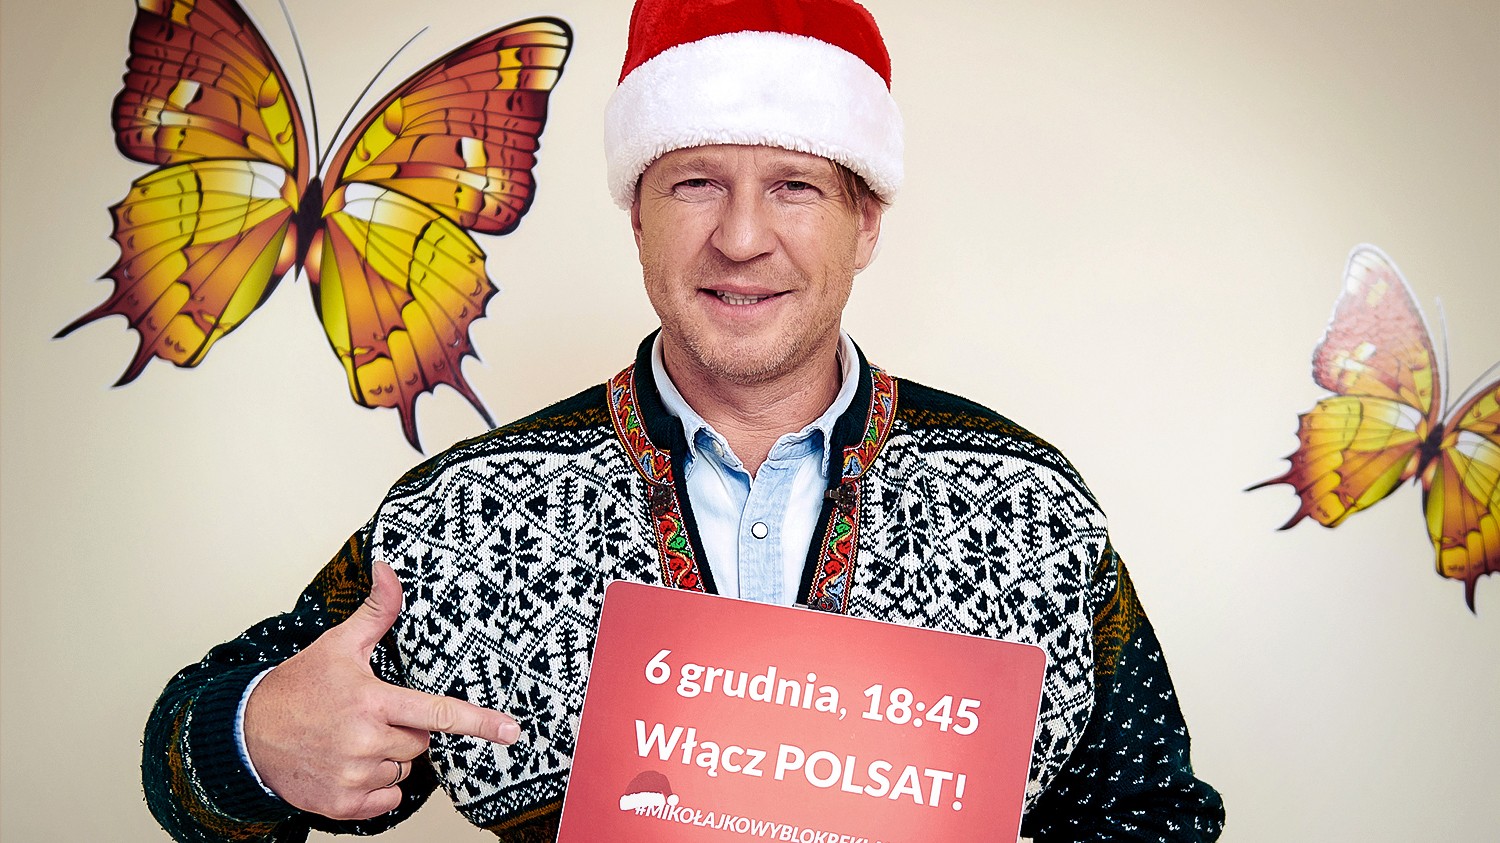 Wojciech Błach: W łatwy sposób aktywnie pomagamy. Fenomen! - Polsat.pl